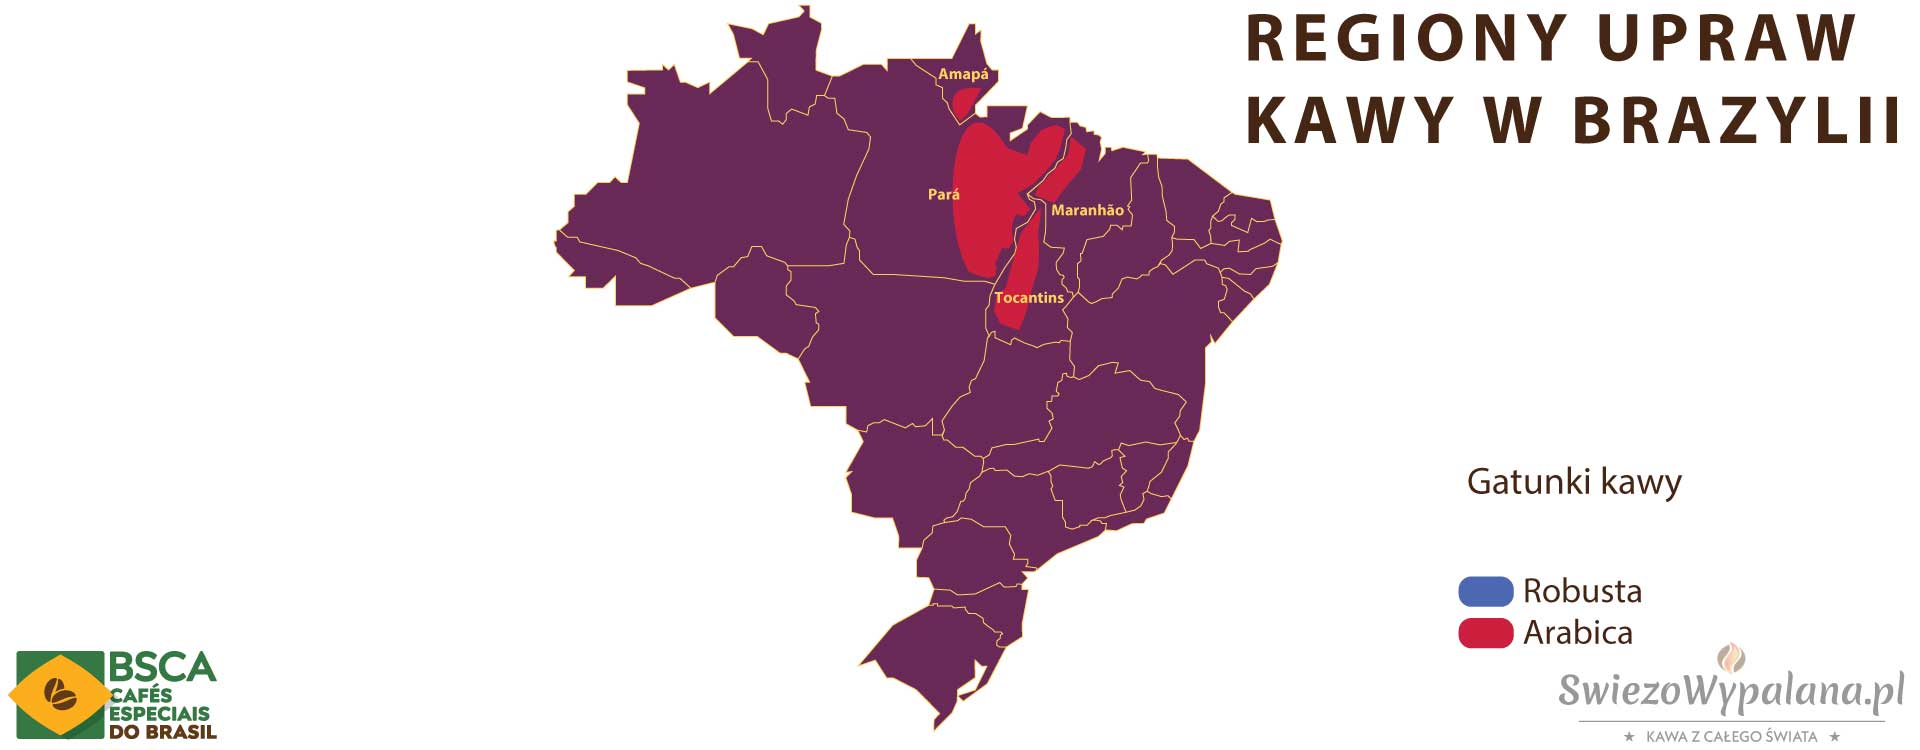 Regiony Upraw  kawy w Brazylii